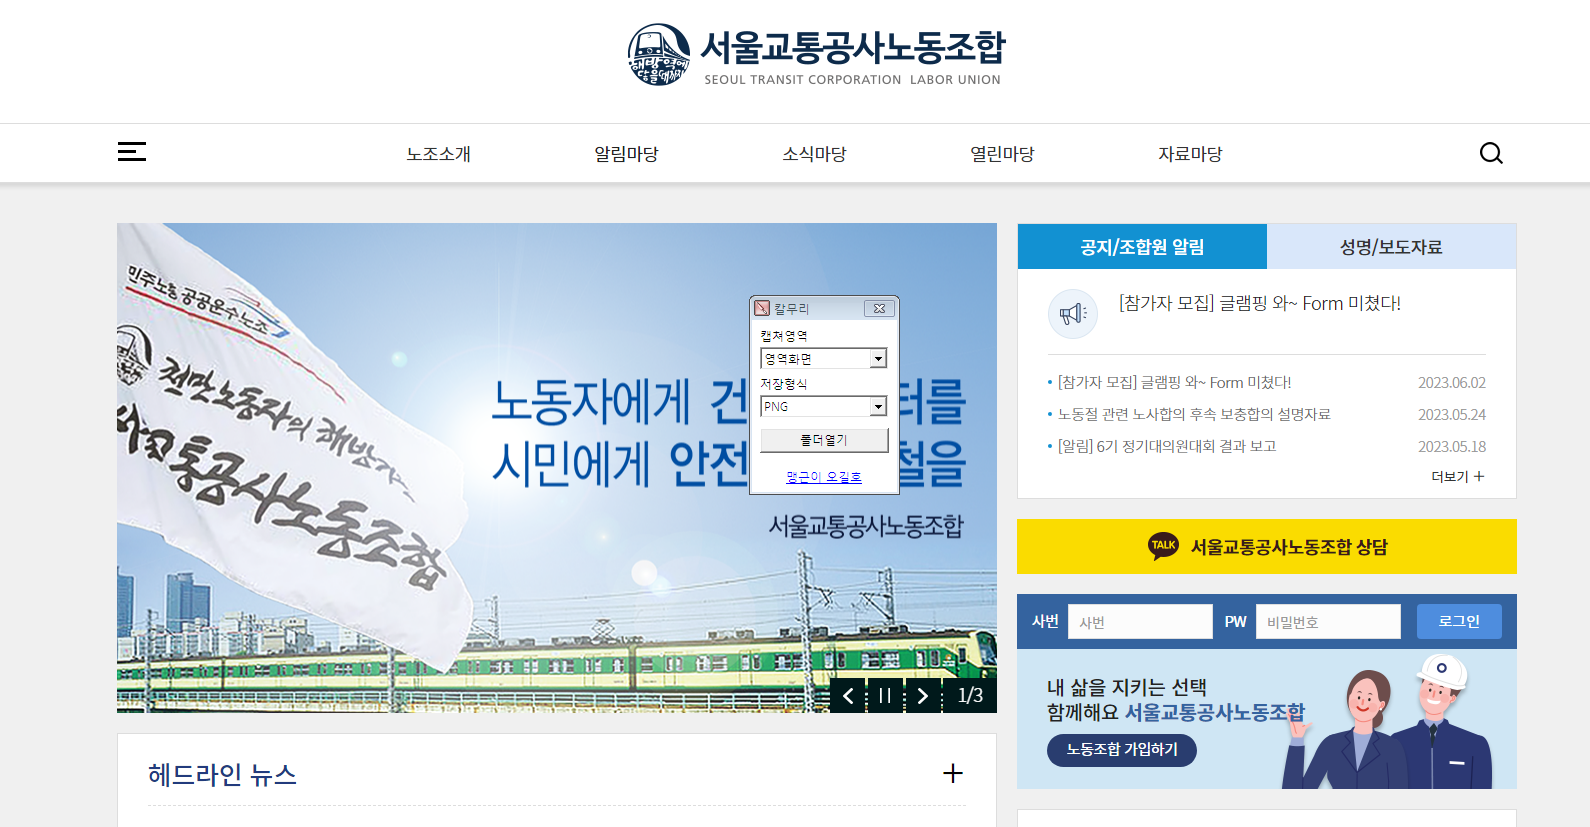 서울교통공사노동조합 홈페이지 (www.stlu.kr)